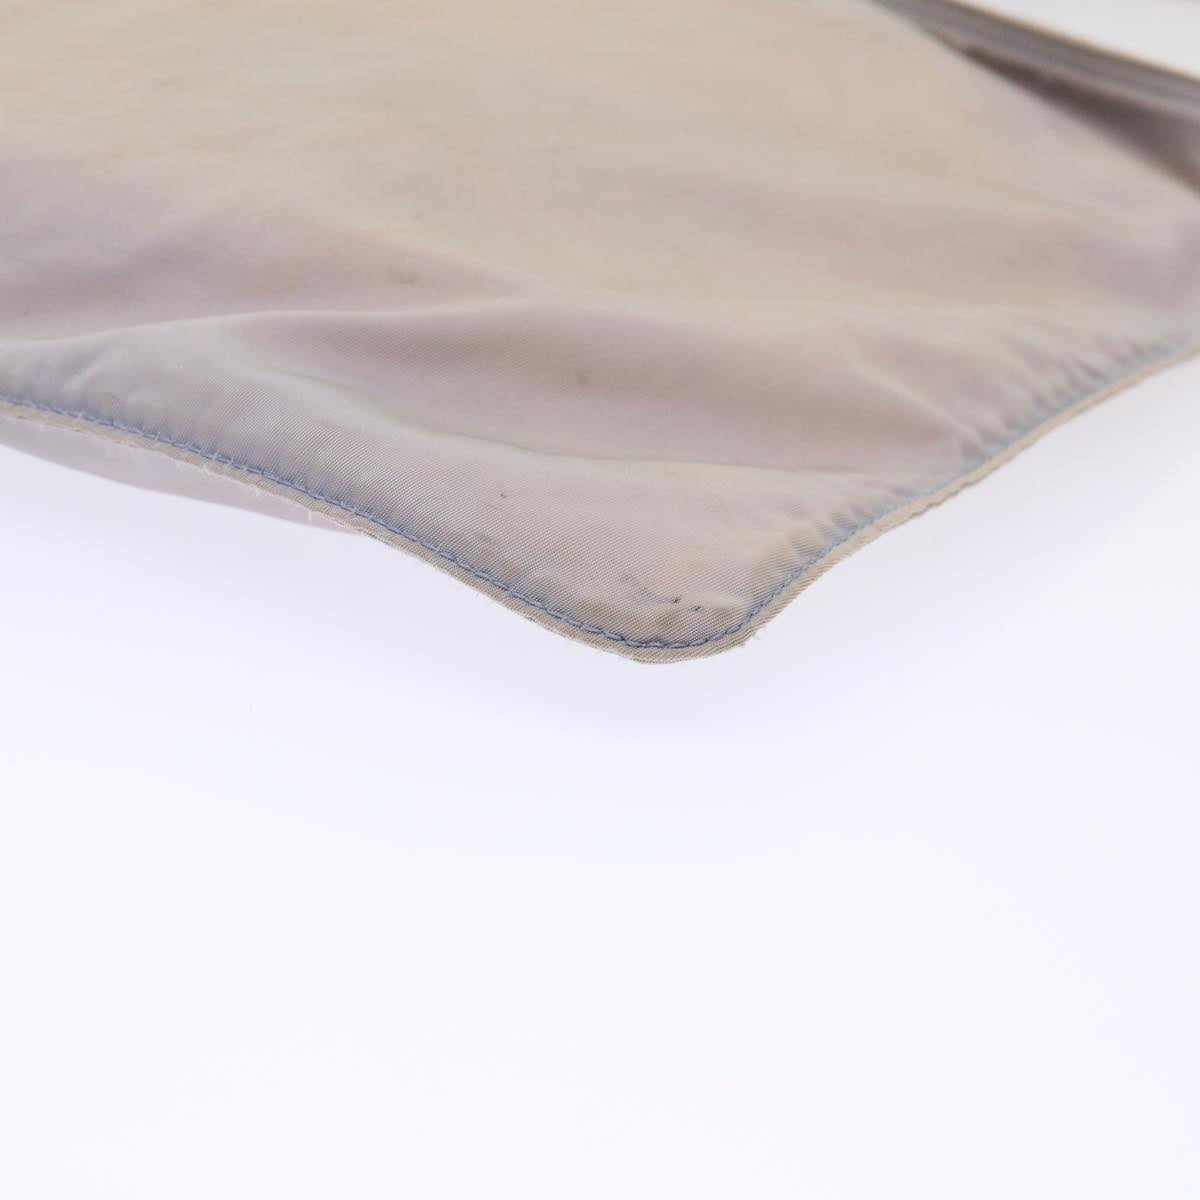 PRADA Shoulder Bag Nylon Gray Auth cl632